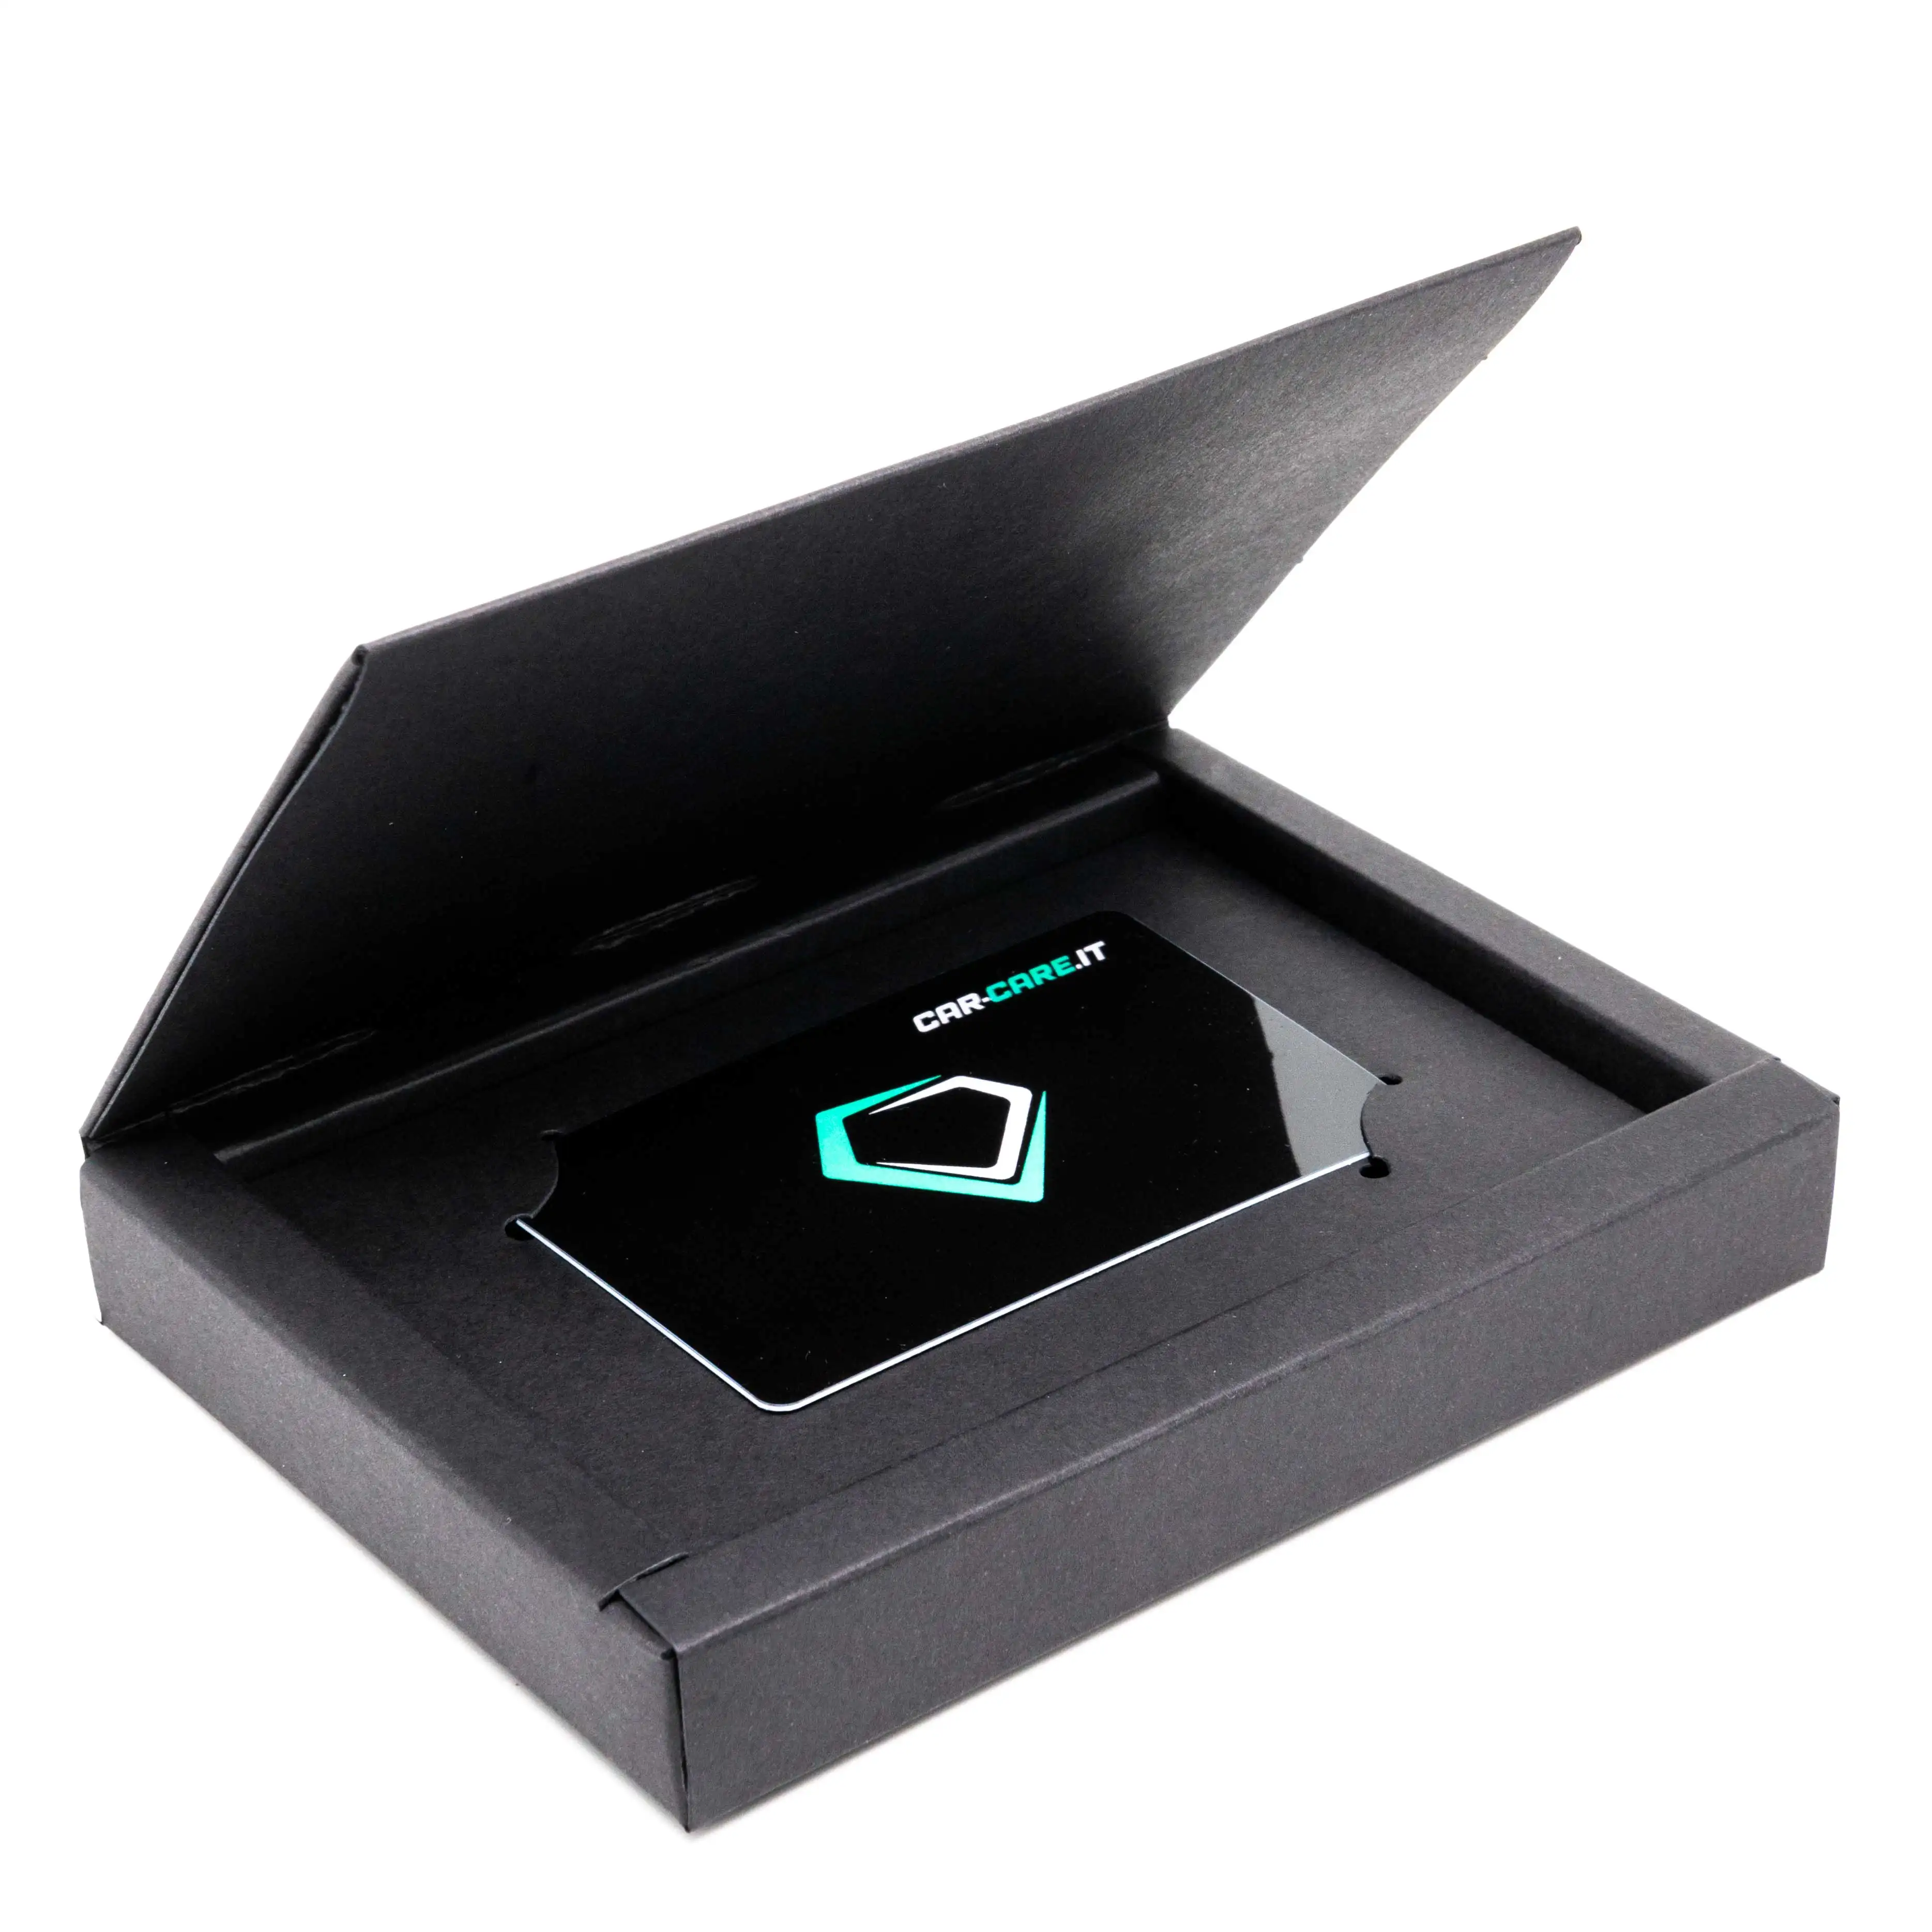 Kotak hadiah mewah desain baru kemasan kartu kredit magnetik kardus hitam kaku terbuat dari kartu kredit Vip papan Kertas